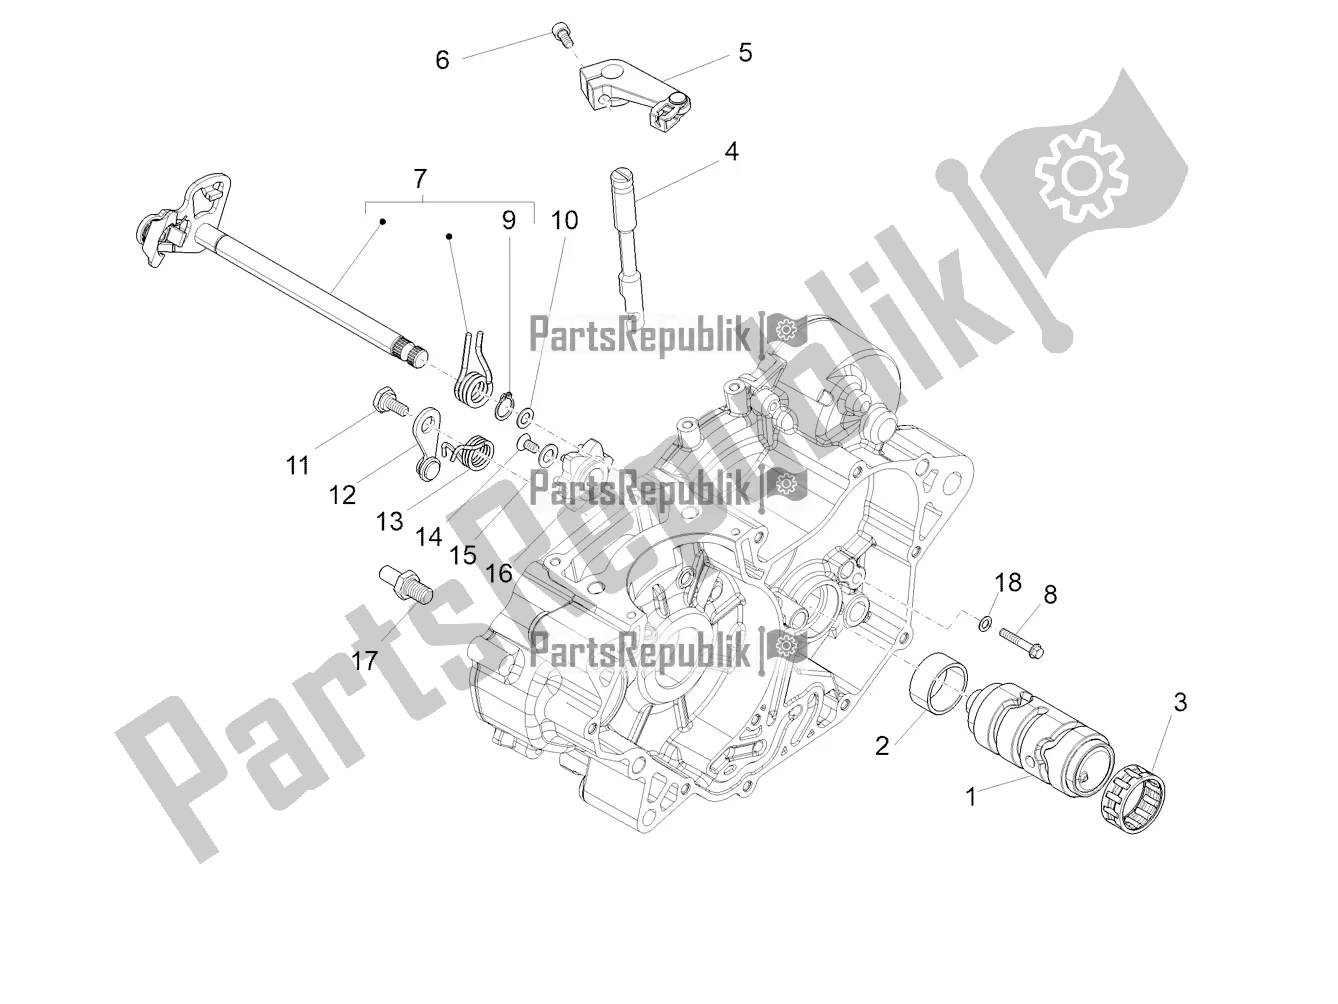 All parts for the Gear Box / Selector / Shift Cam of the Aprilia Tuono 125 2020